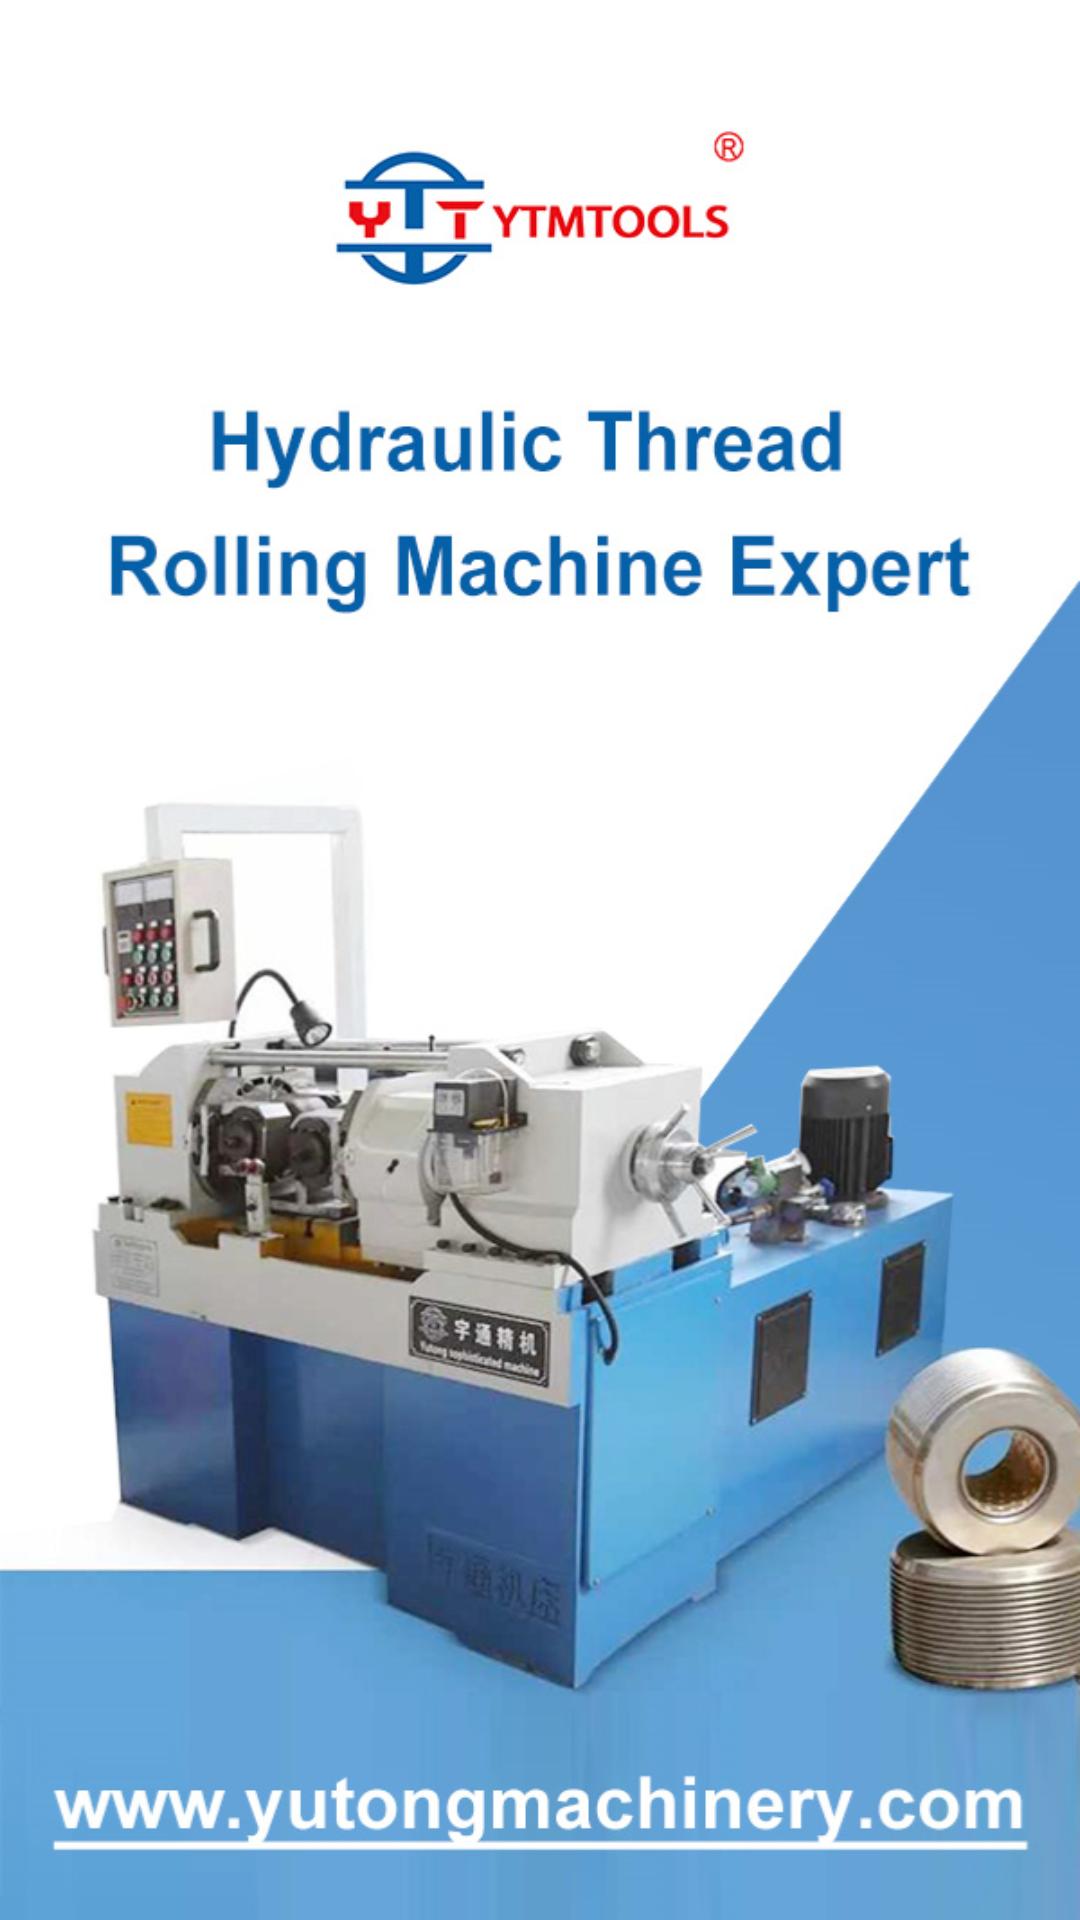 Hydraulic Thread Rolling Machine Expert - YTMTOOLS-封面.jpg